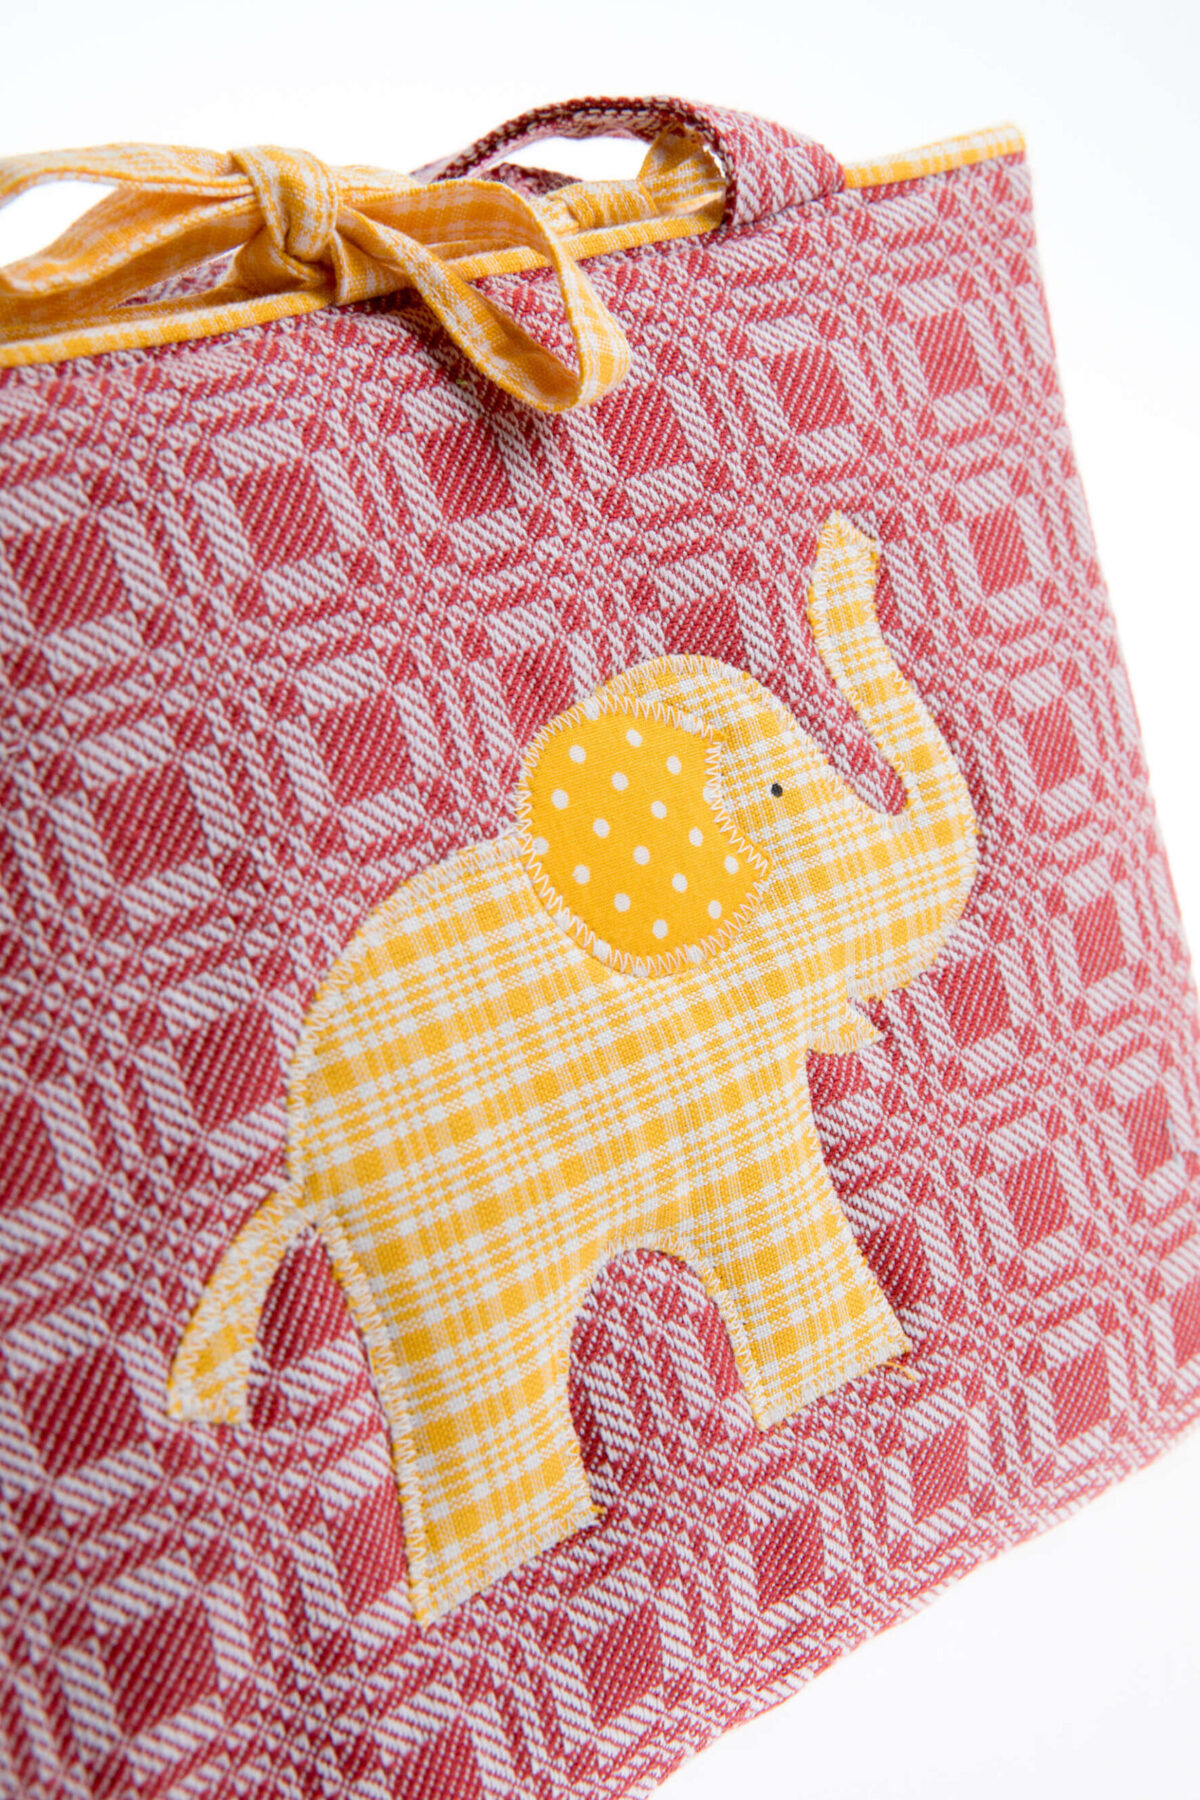 Tasche rot mit gelben Elefant